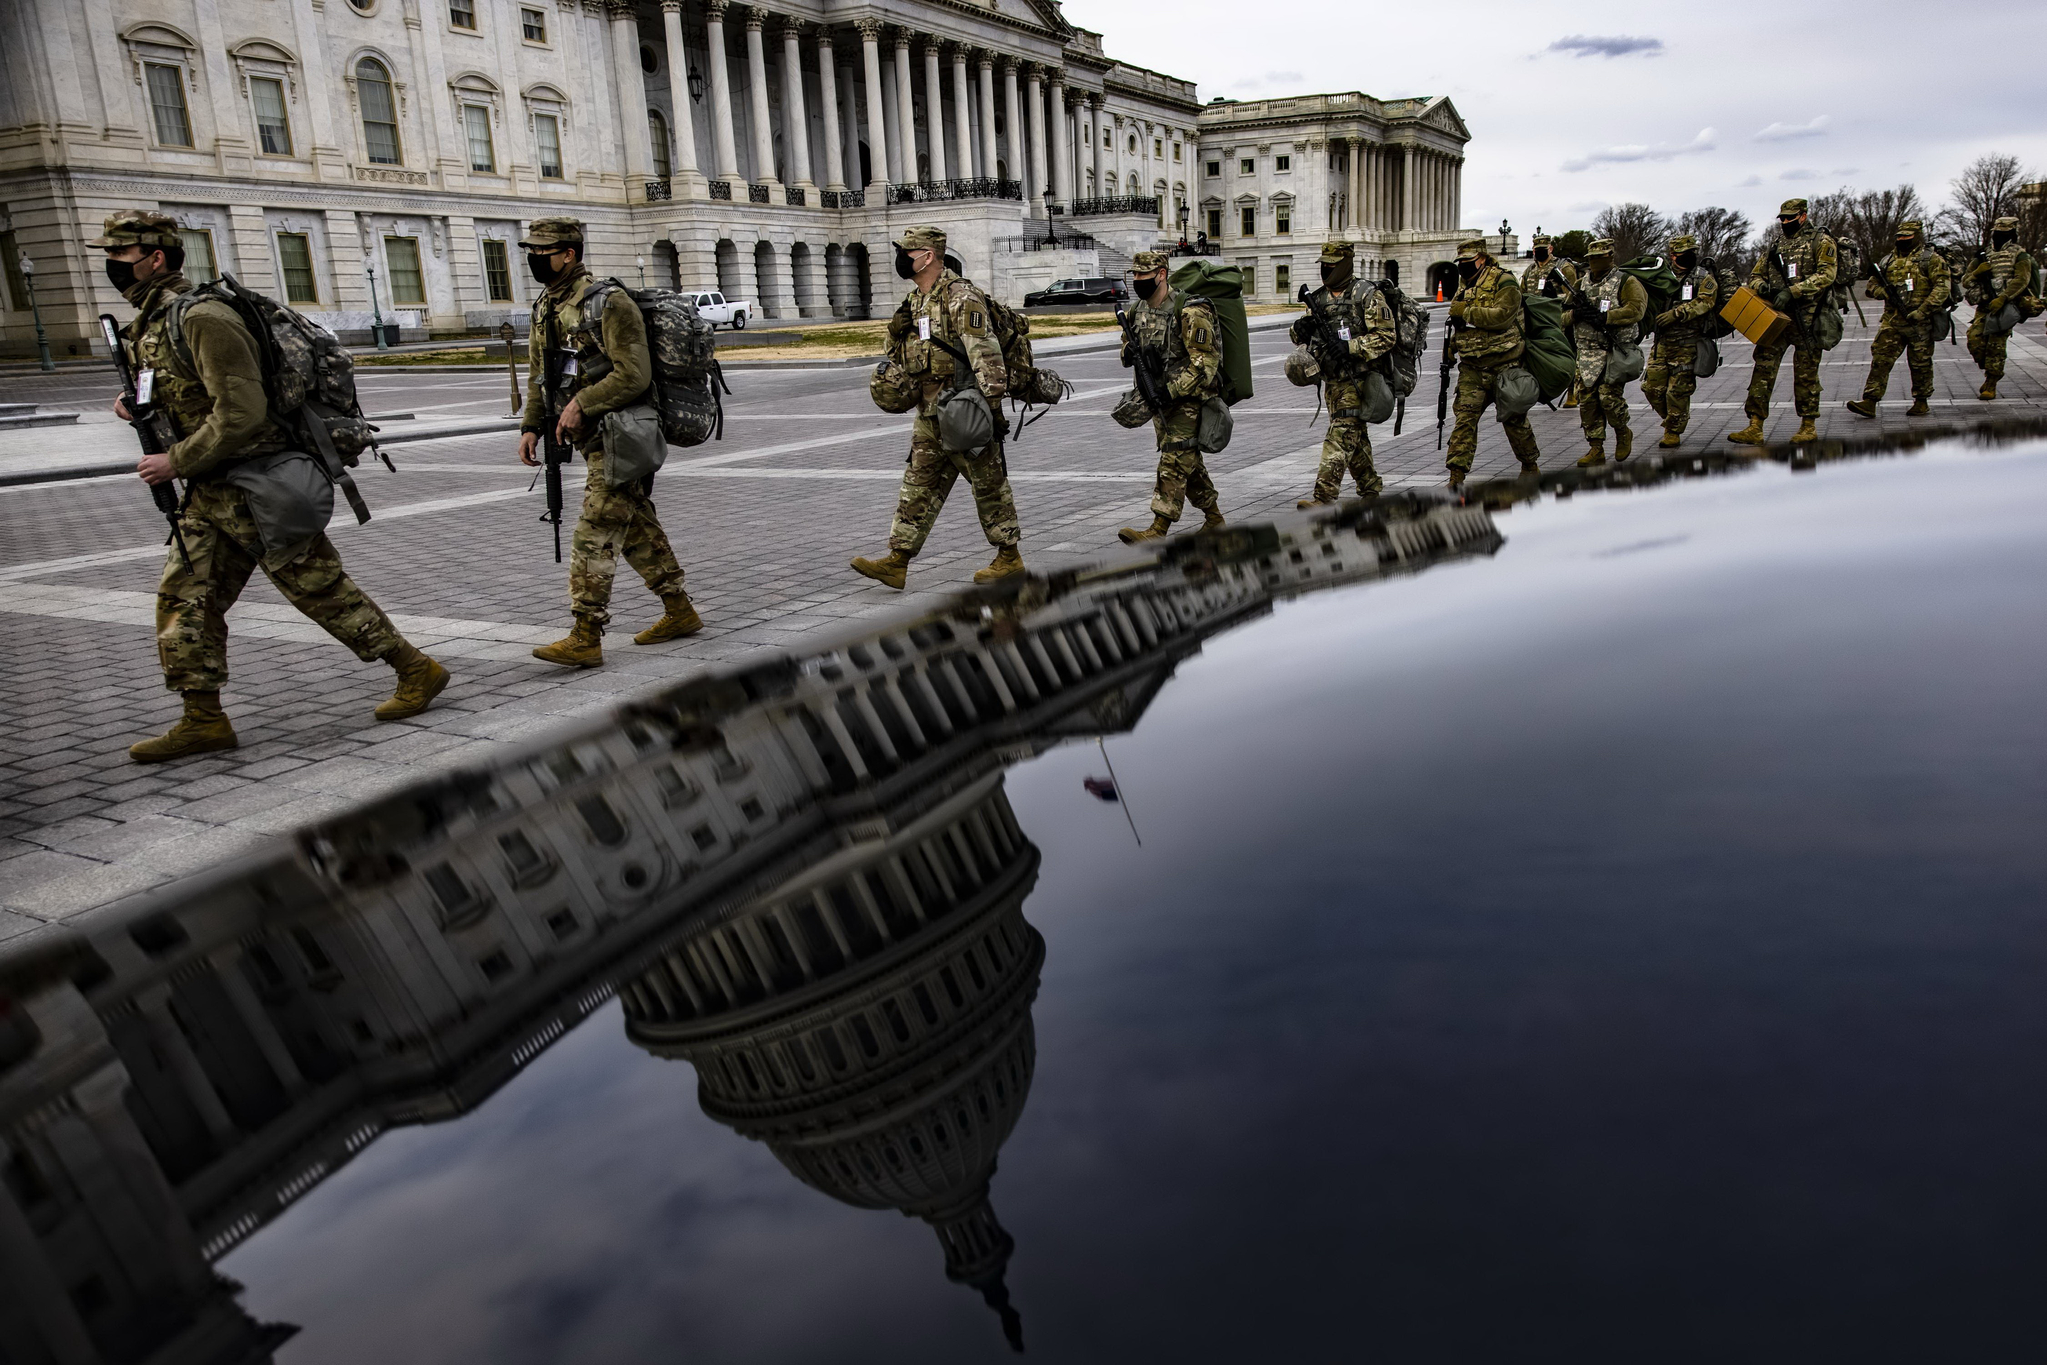 버지니아 주 방위군이 16일 워싱턴 DC에 도착해 담당지역으로 이동하고 있다. 지난 6일의 의사당 난입사태 이후 미 연방수사국은 수도 워싱턴과 50개 주에서 유사한 사례가 발생할 수 있다고 경고했다. AFP=연합뉴스